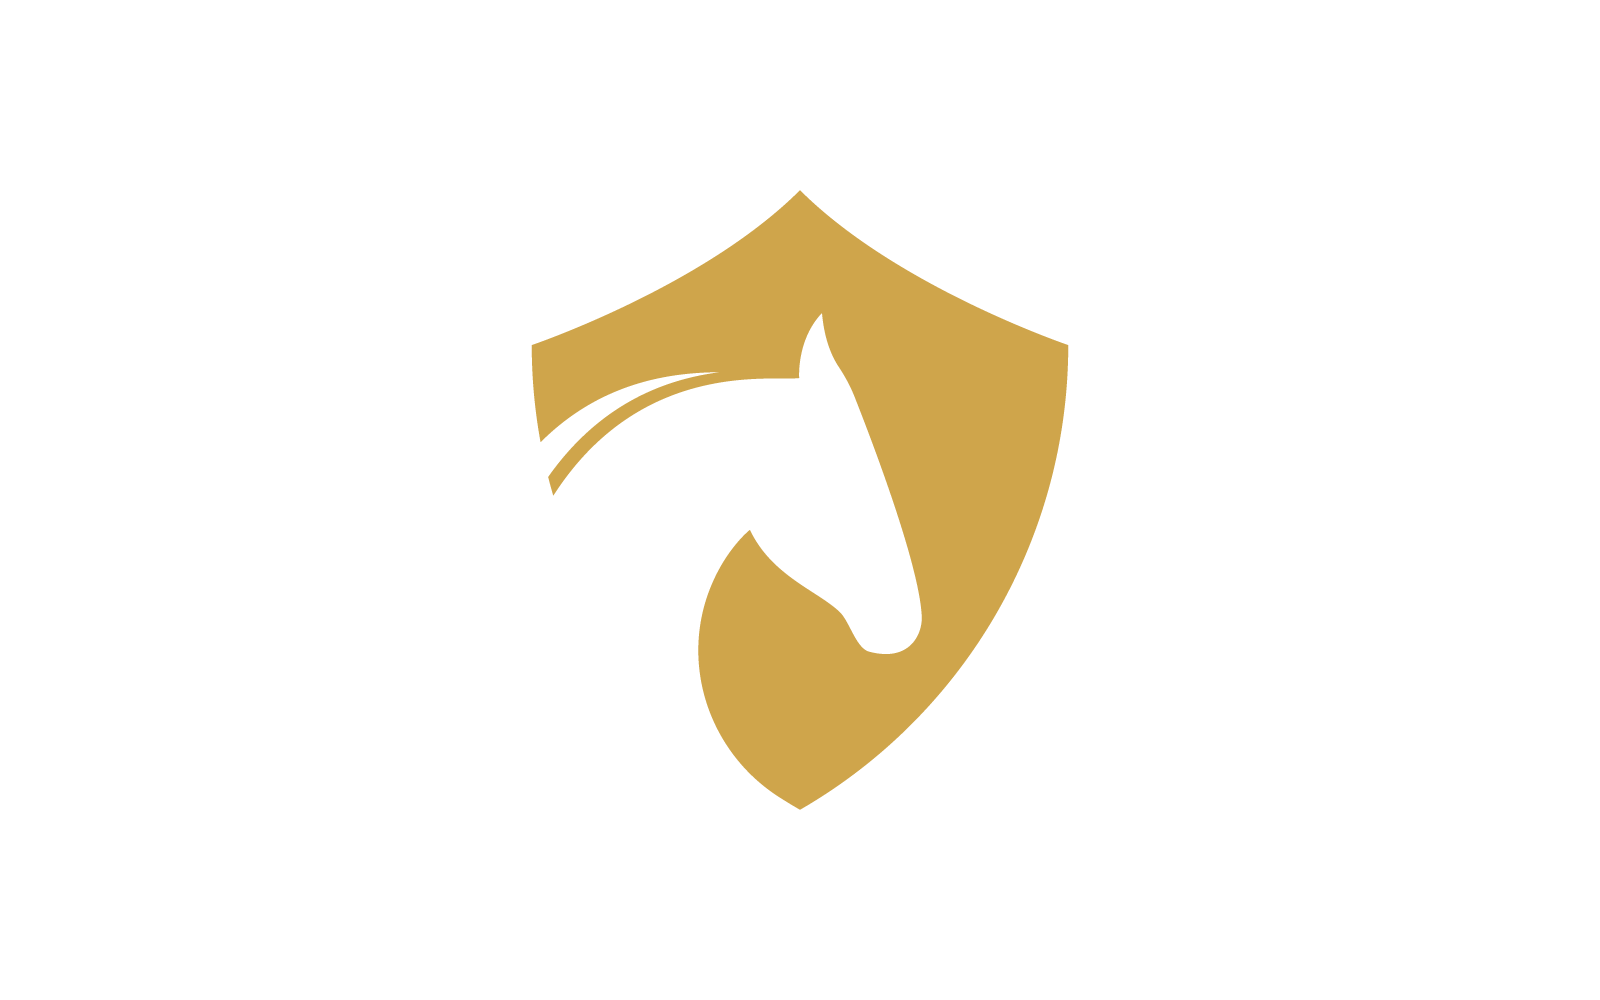 Horse logo vector flat design icon template